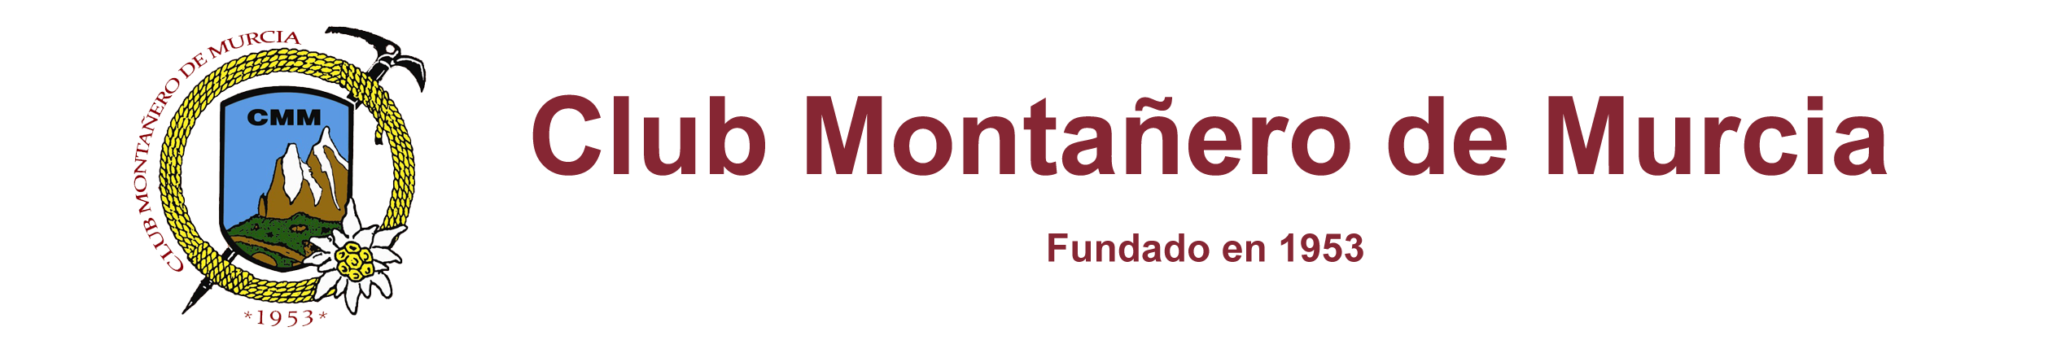 Club Montañero de Murcia